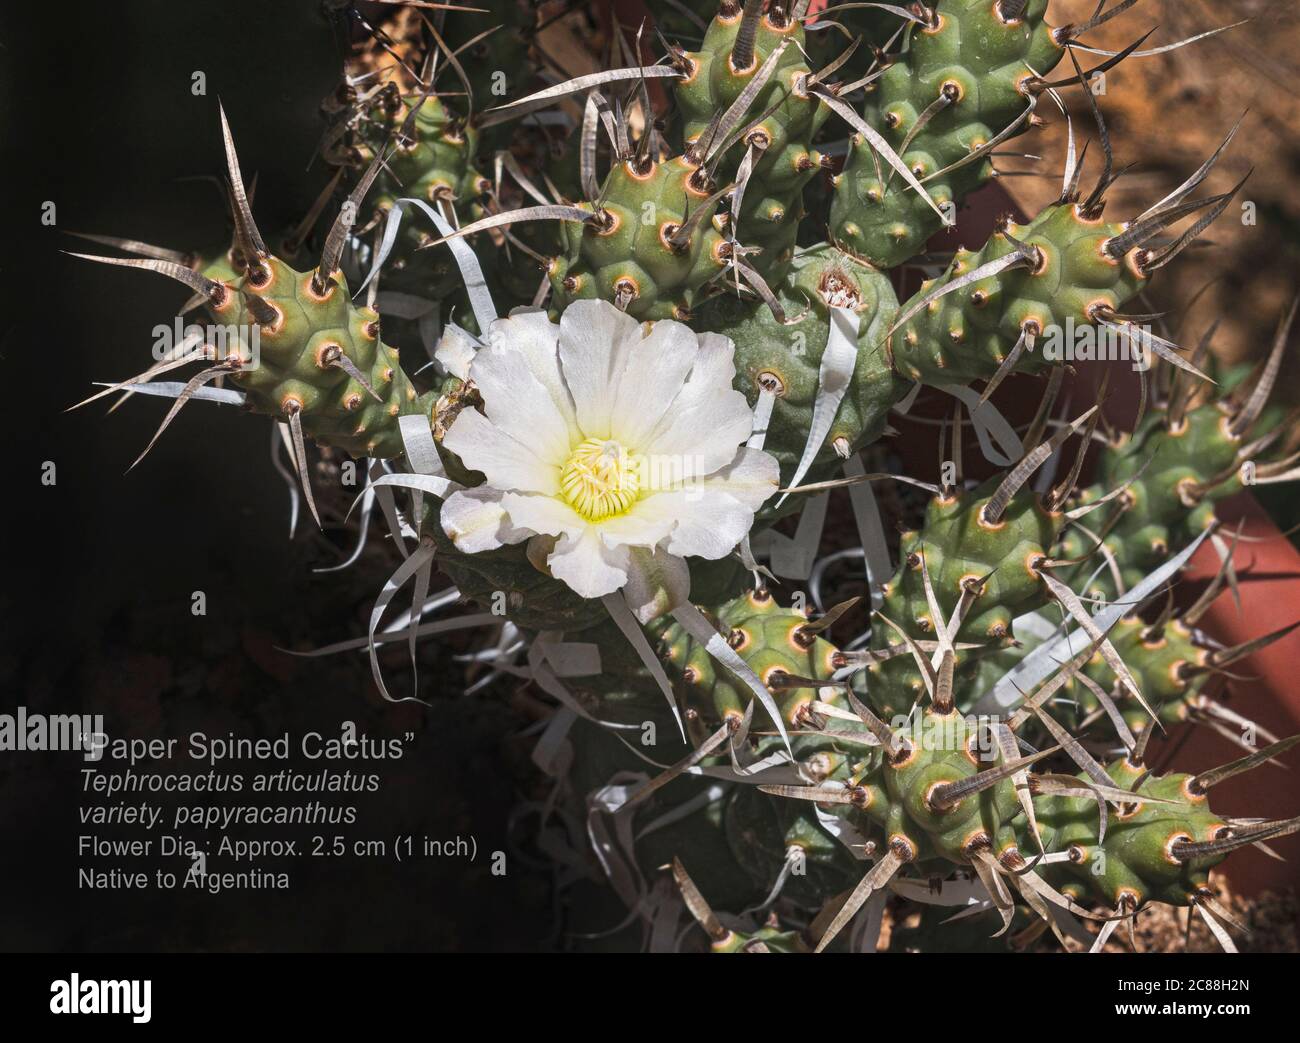 Markiertes Exemplar einer Papierrücken-Cholla-Kaktuspflanze mit einer einzigen weißen Blume, umgeben von papierfarbenen Stacheln und verzweigten Segmenten Stockfoto